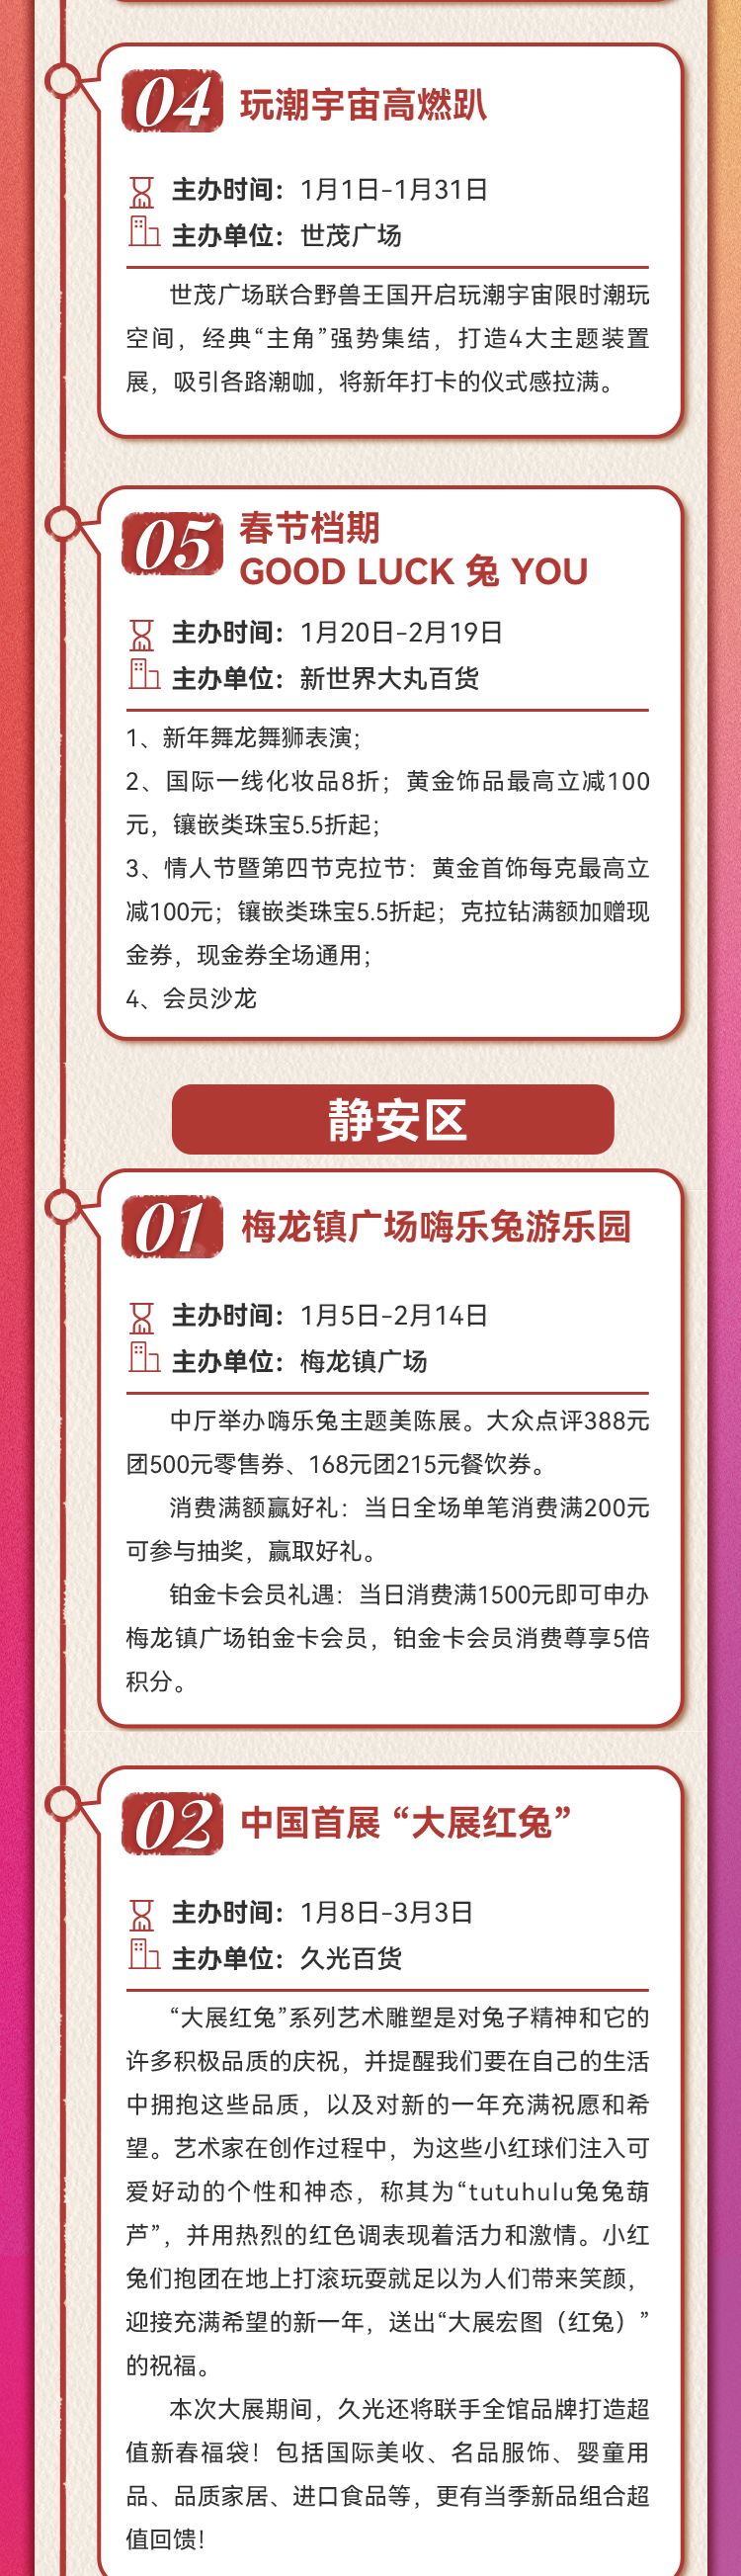 2023上海春节购物打折活动一览(各区)